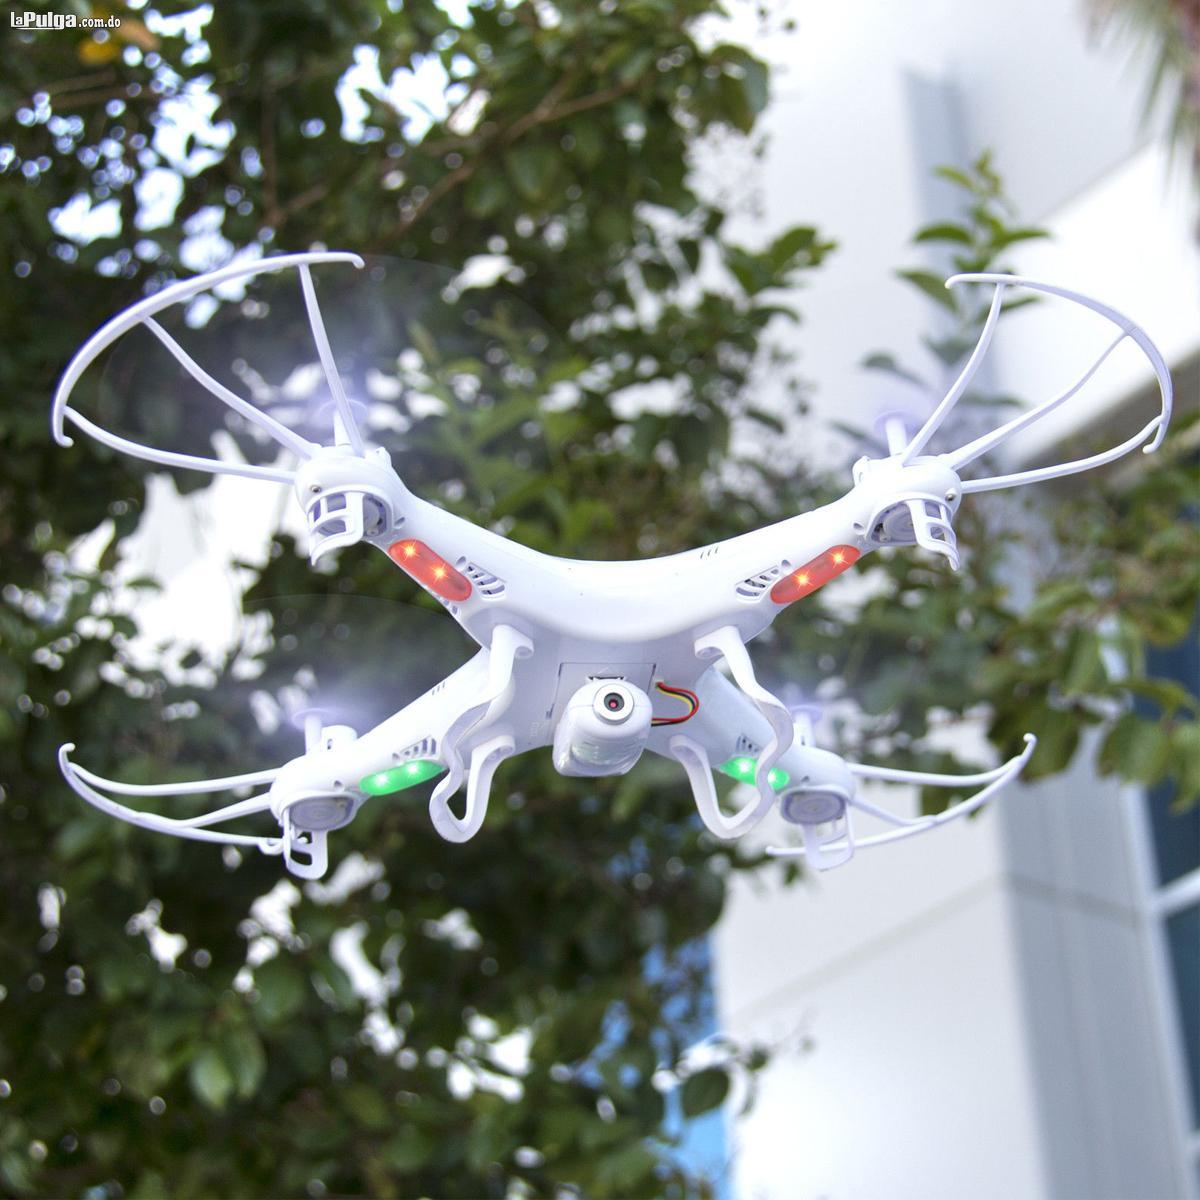 Drone Syma X5c 1 Con Cámara Original Garantia Y Factura Foto 6567865-5.jpg